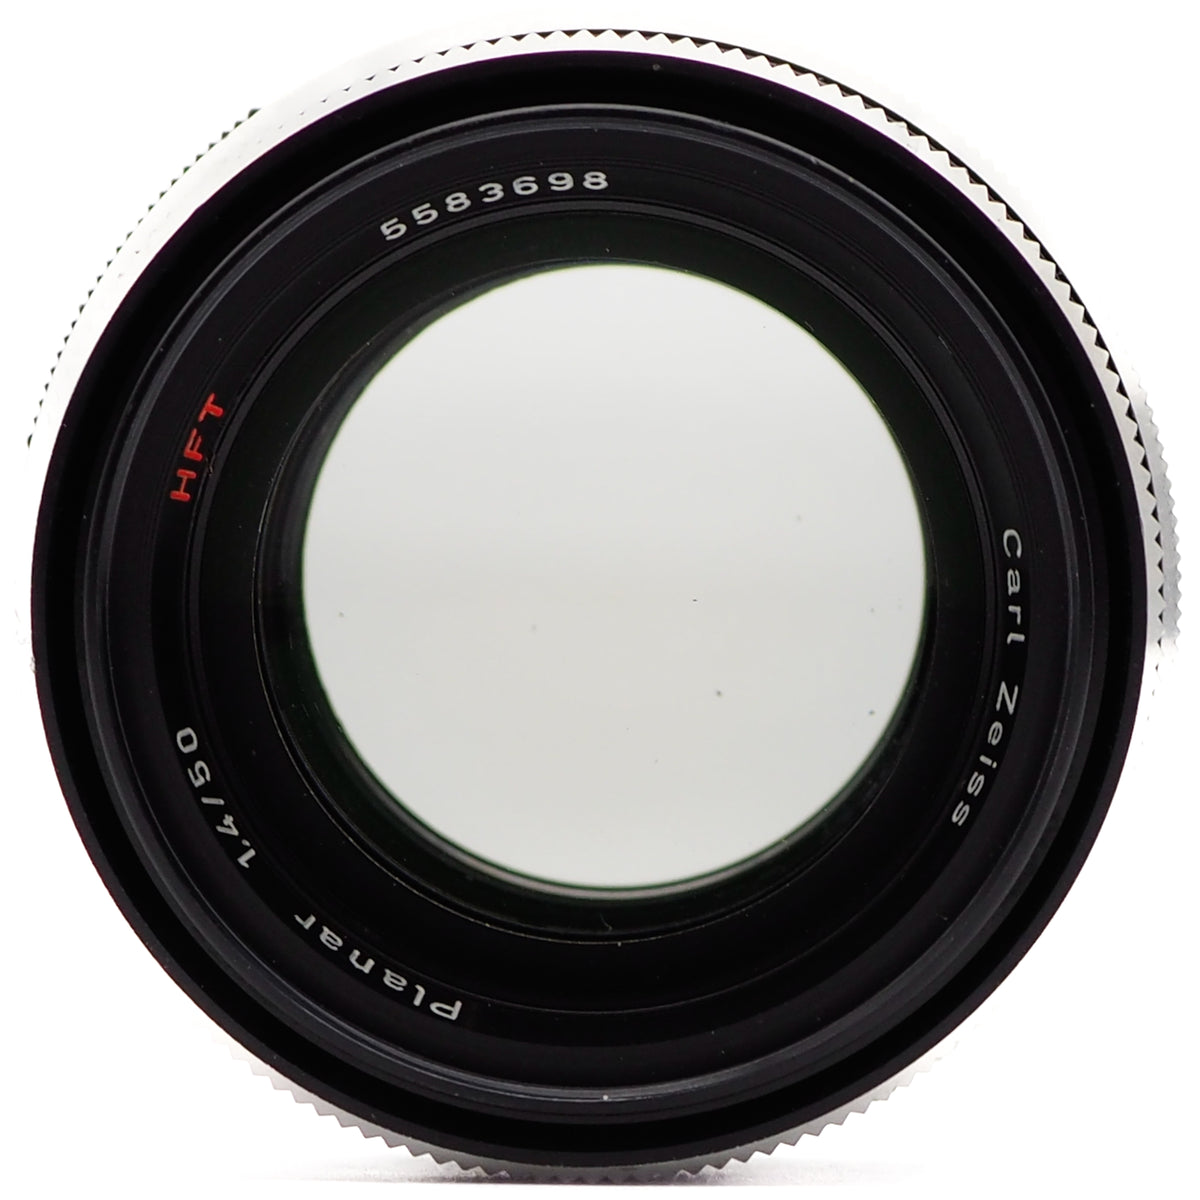 Carl Zeiss Planar 50mm f/1.4 HFT Lens (Rollei QBM Mount)